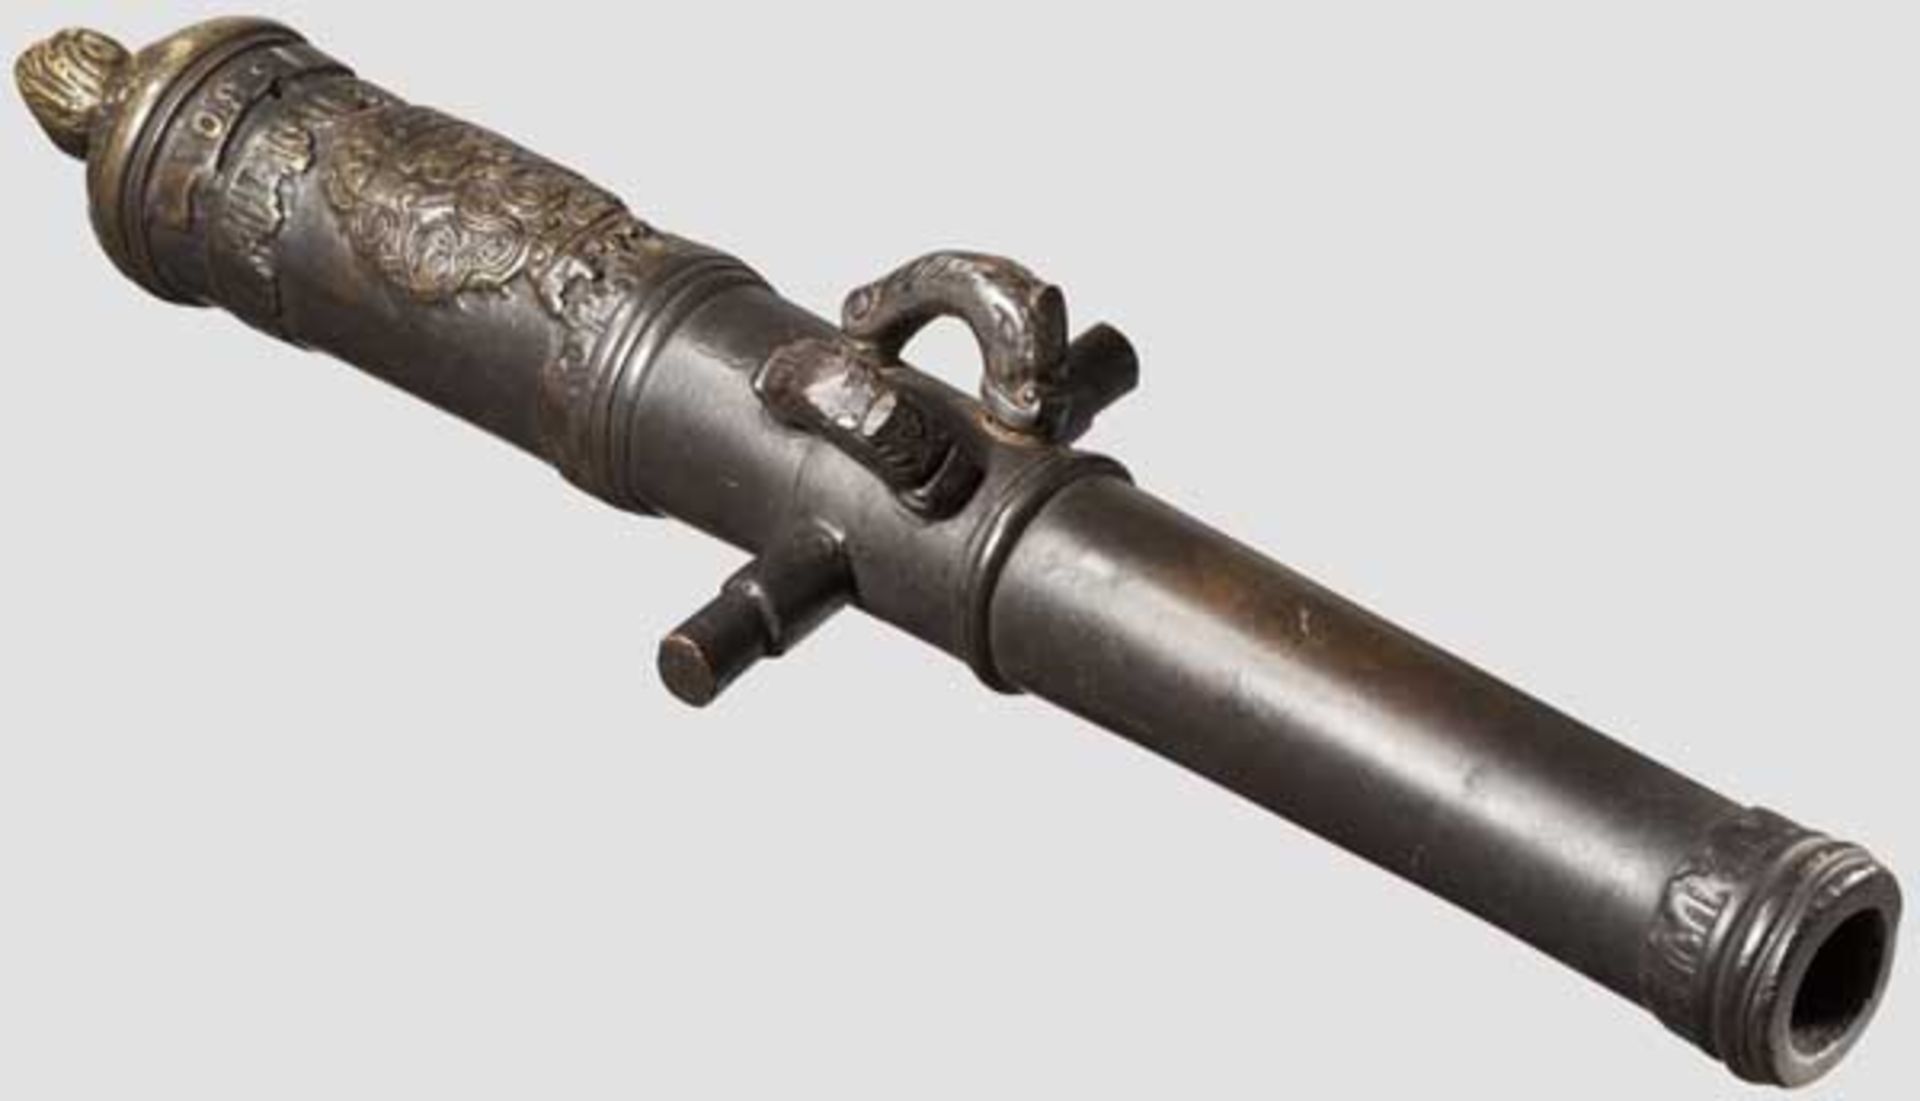 Geschützrohr, Sammleranfertigung im Stil des 17. Jhdts. Schwarz patinierte Bronze. Durch Baluster